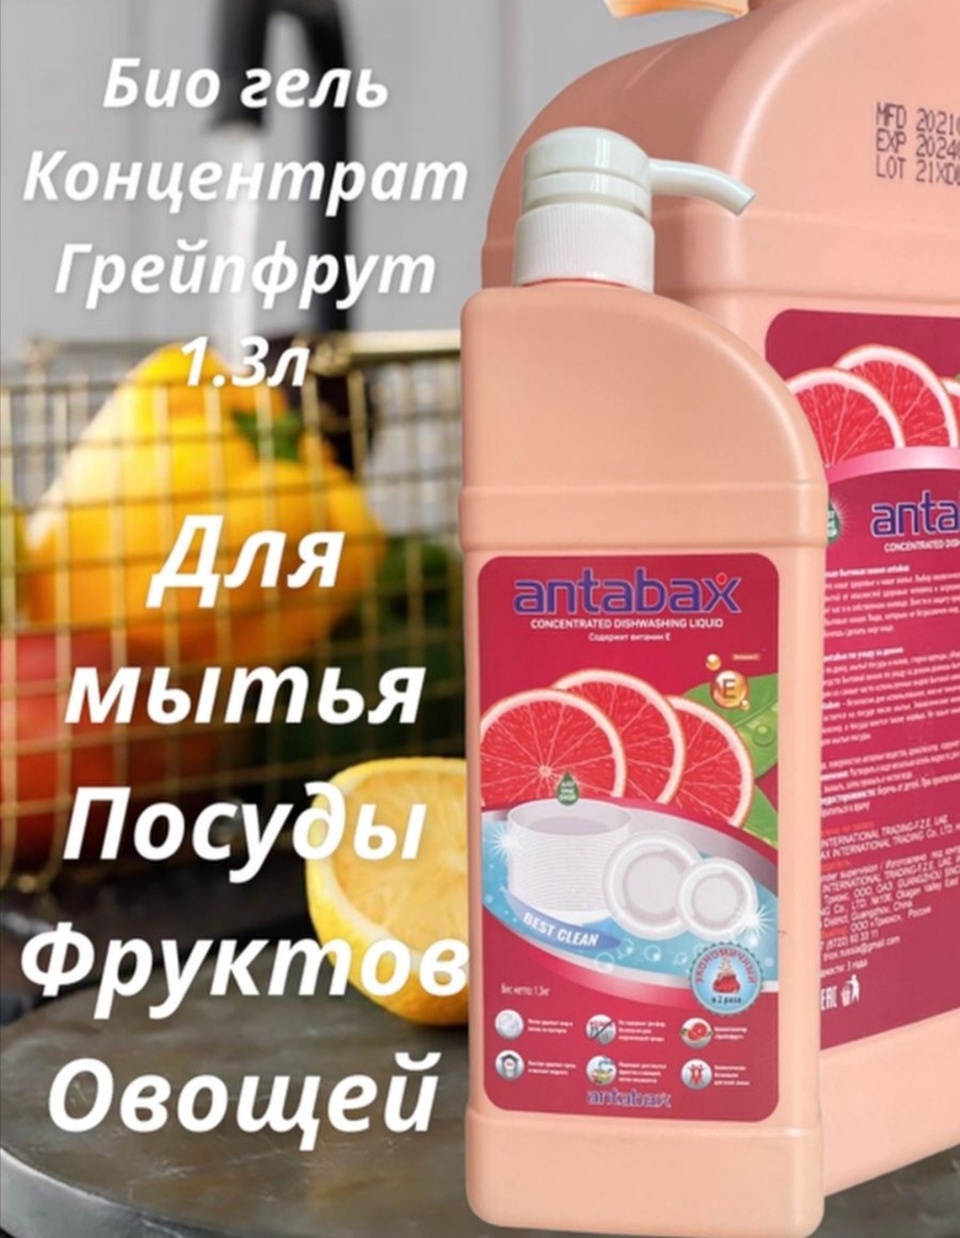 Antabax средство для мытья посуды - 550 ₽, заказать онлайн.